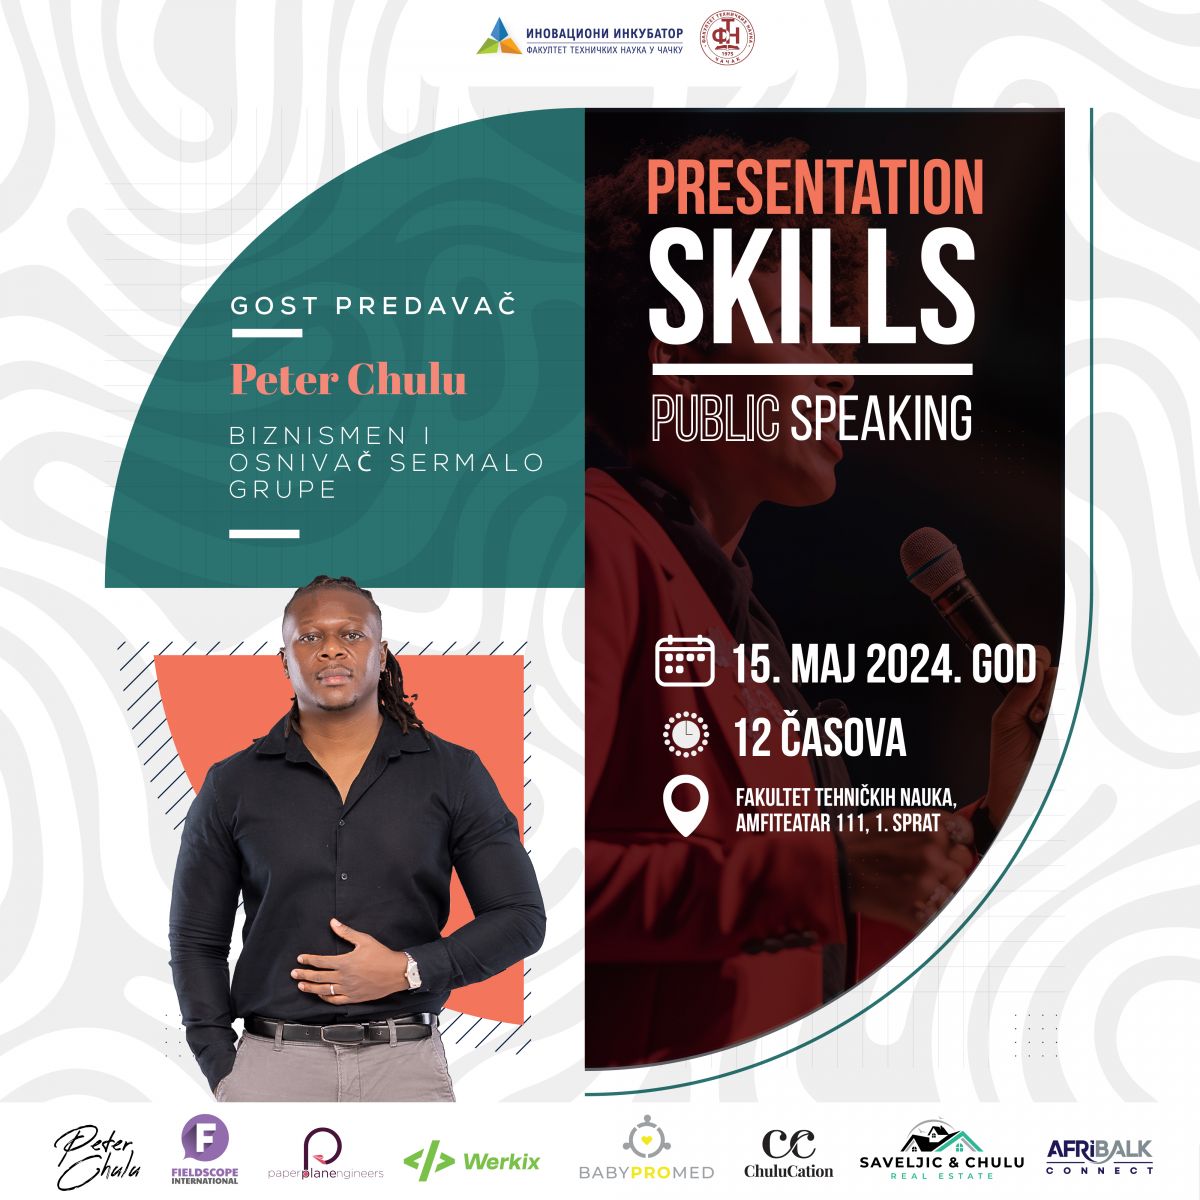 Најава предавања - “Presentation skills – Public speaking” 15. мај 2024. године